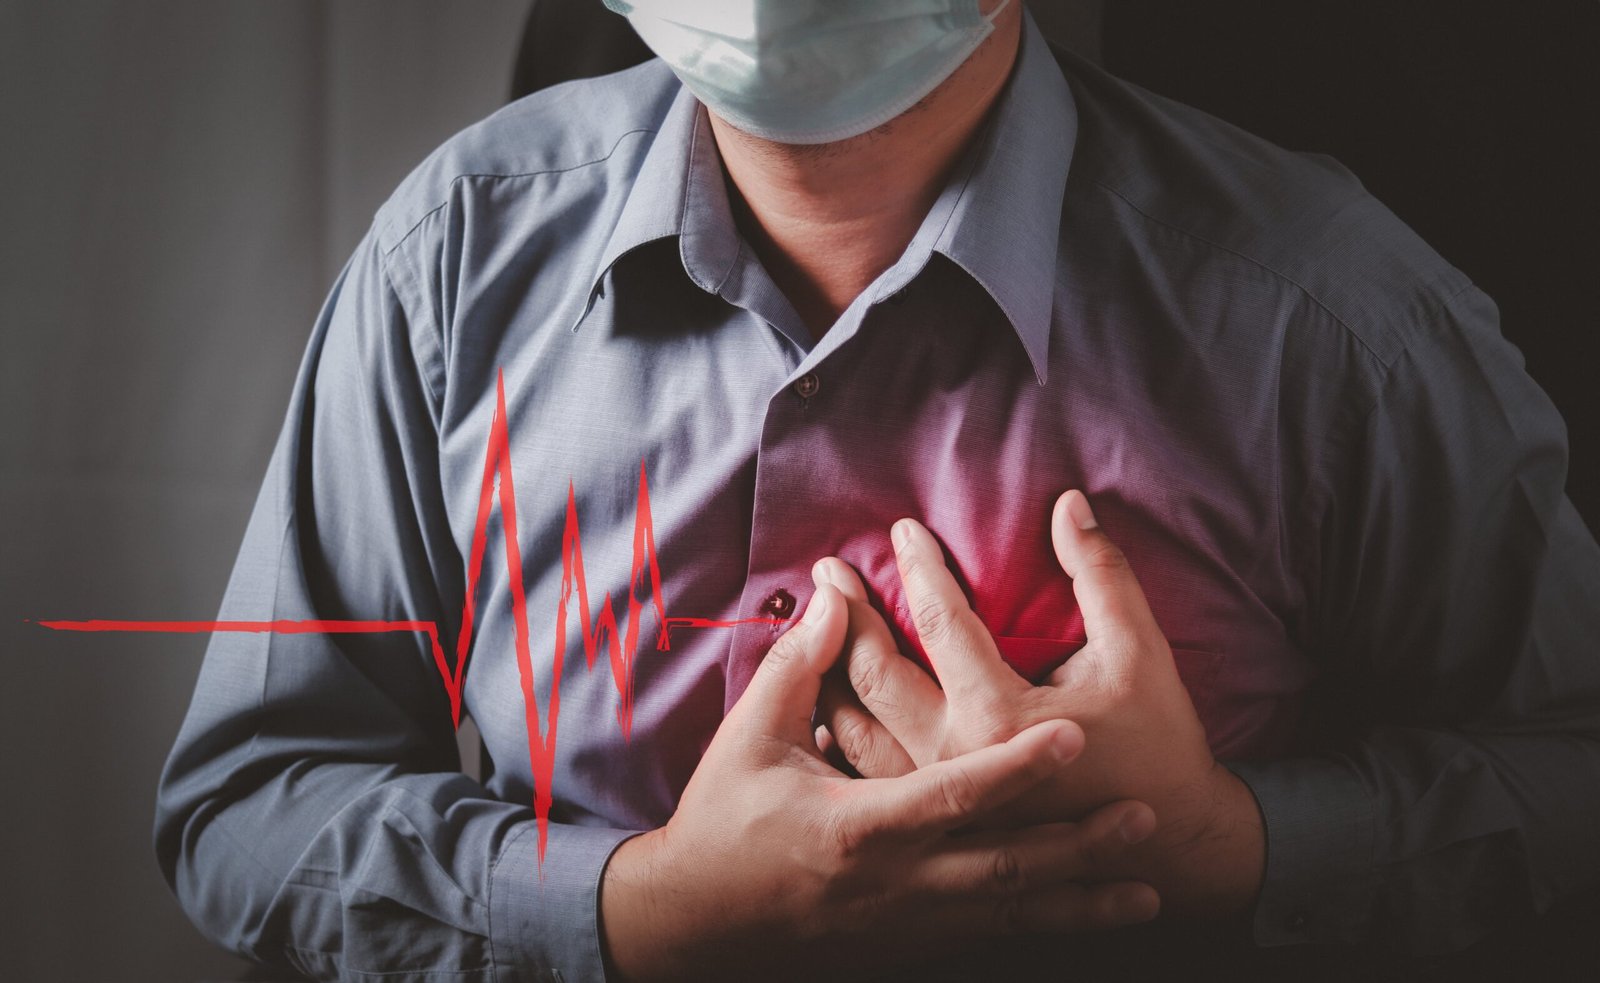 Mức độ nghiêm trọng của hội chứng sau ngừng tim phụ thuộc vào thời gian và nguyên nhân ngừng tim